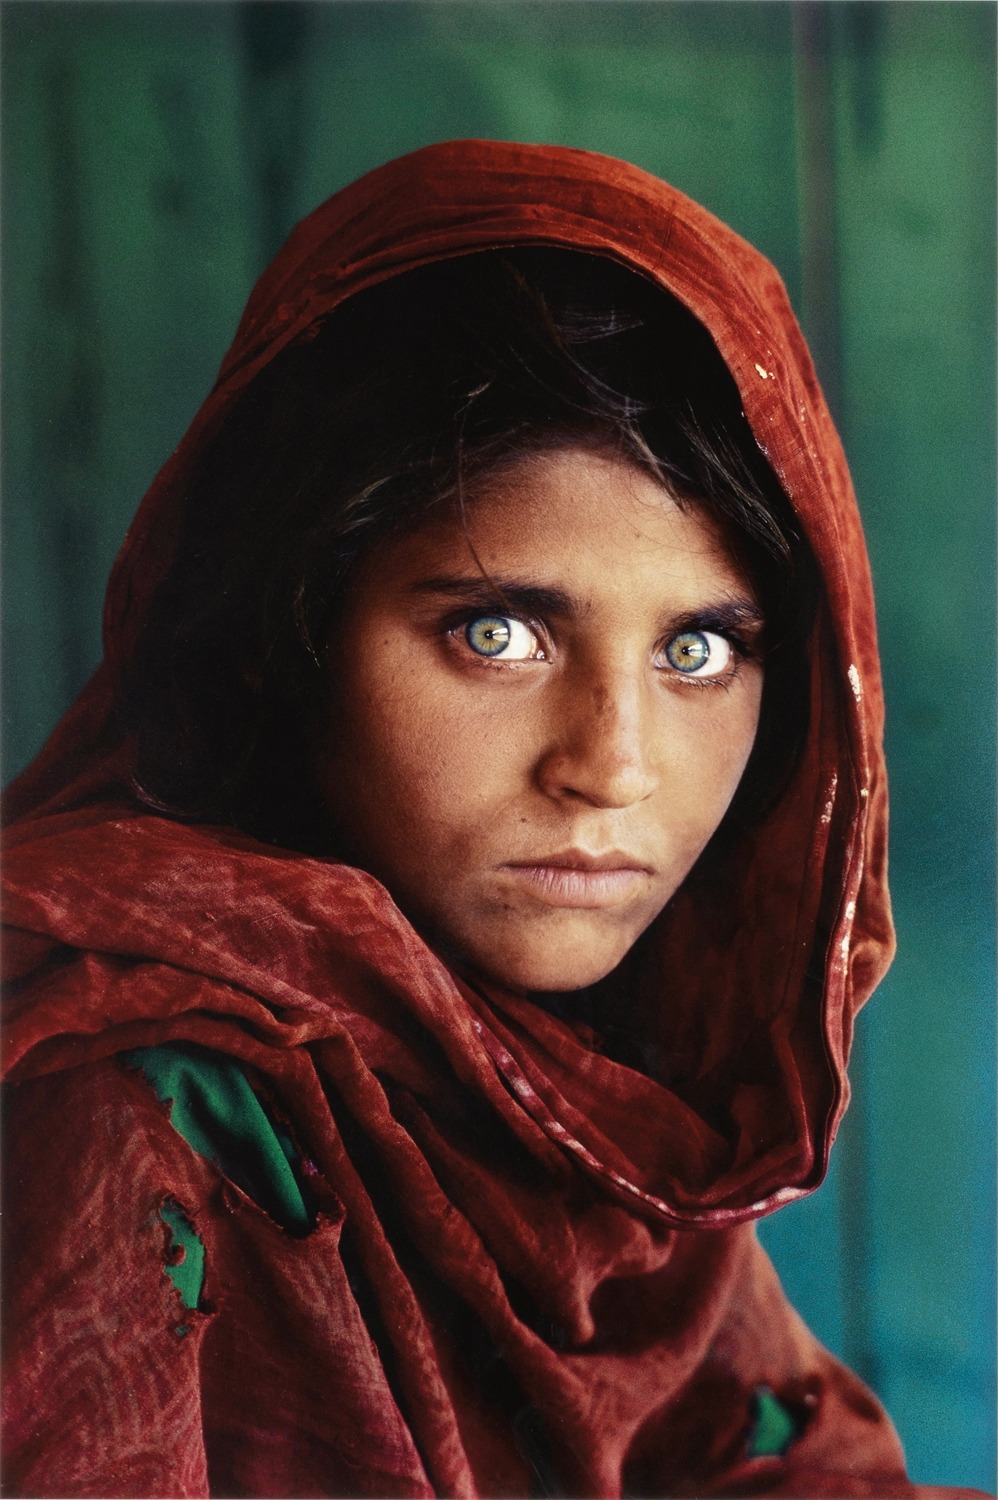 바로 이 사진, 푸른 눈의 아프간 소녀